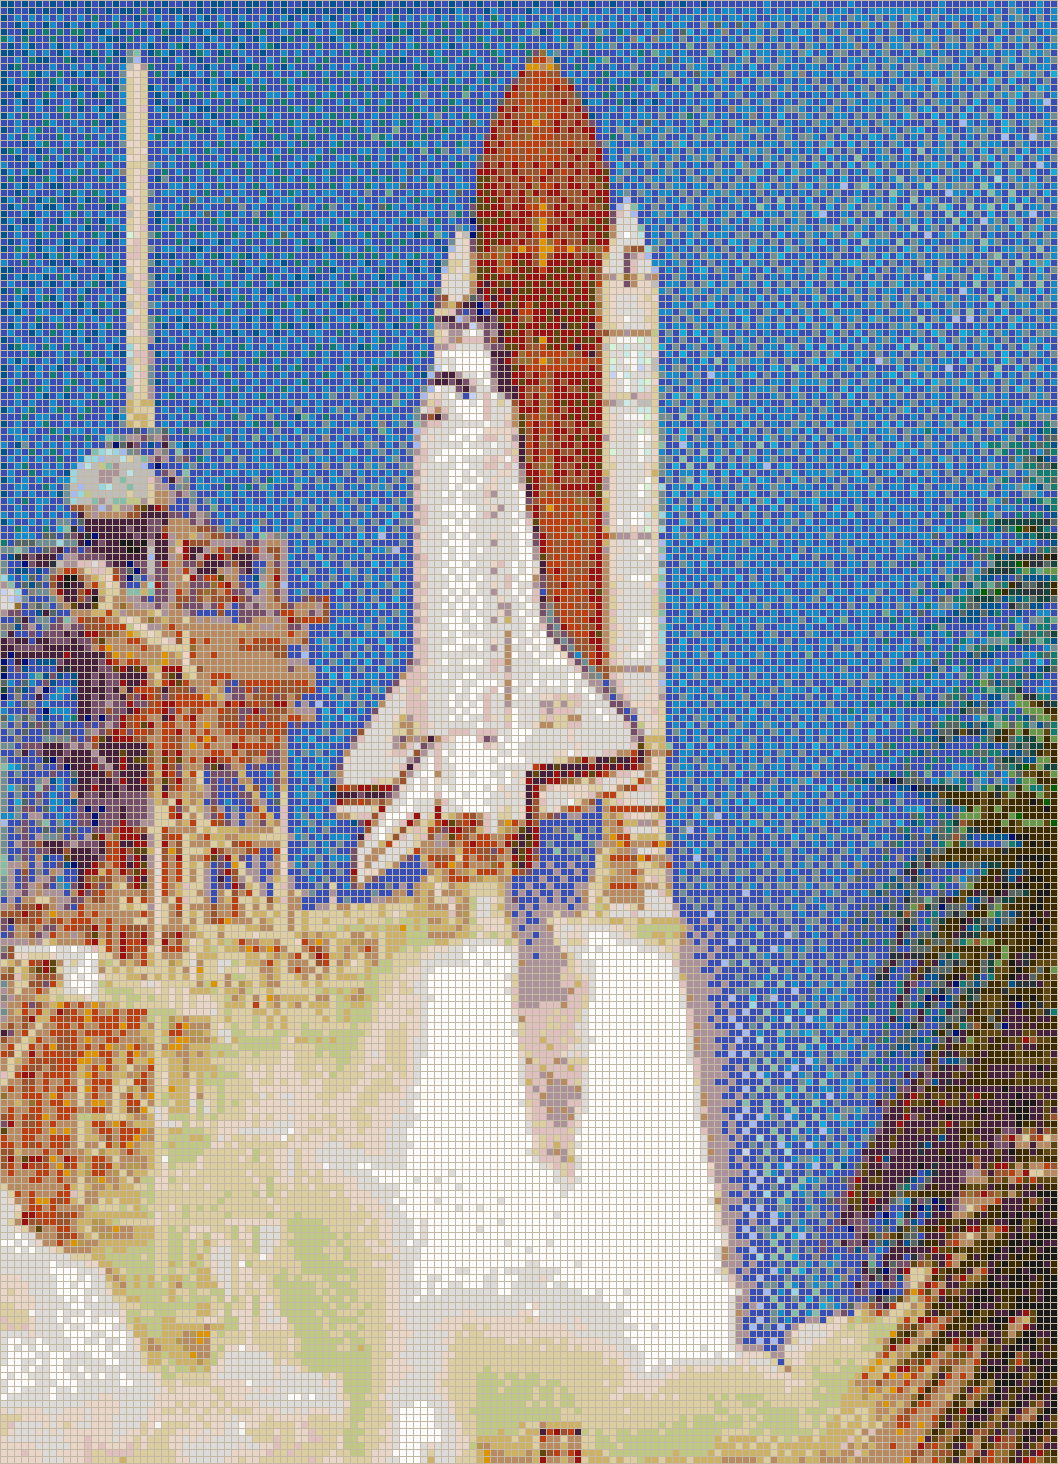 Launch of Atlantis Space Shuttle - Mosaic Tile Art